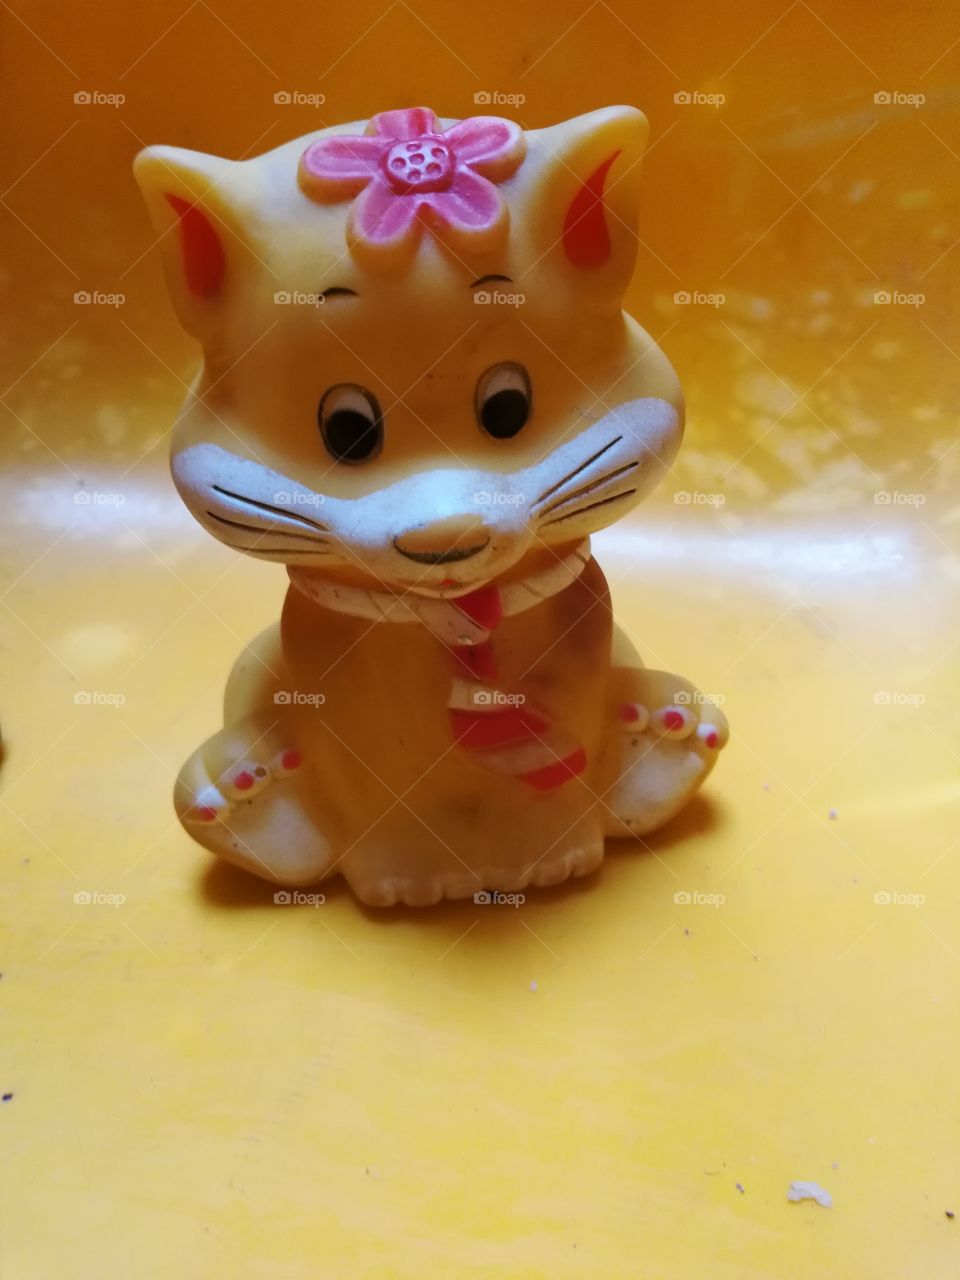 Cute cat toy